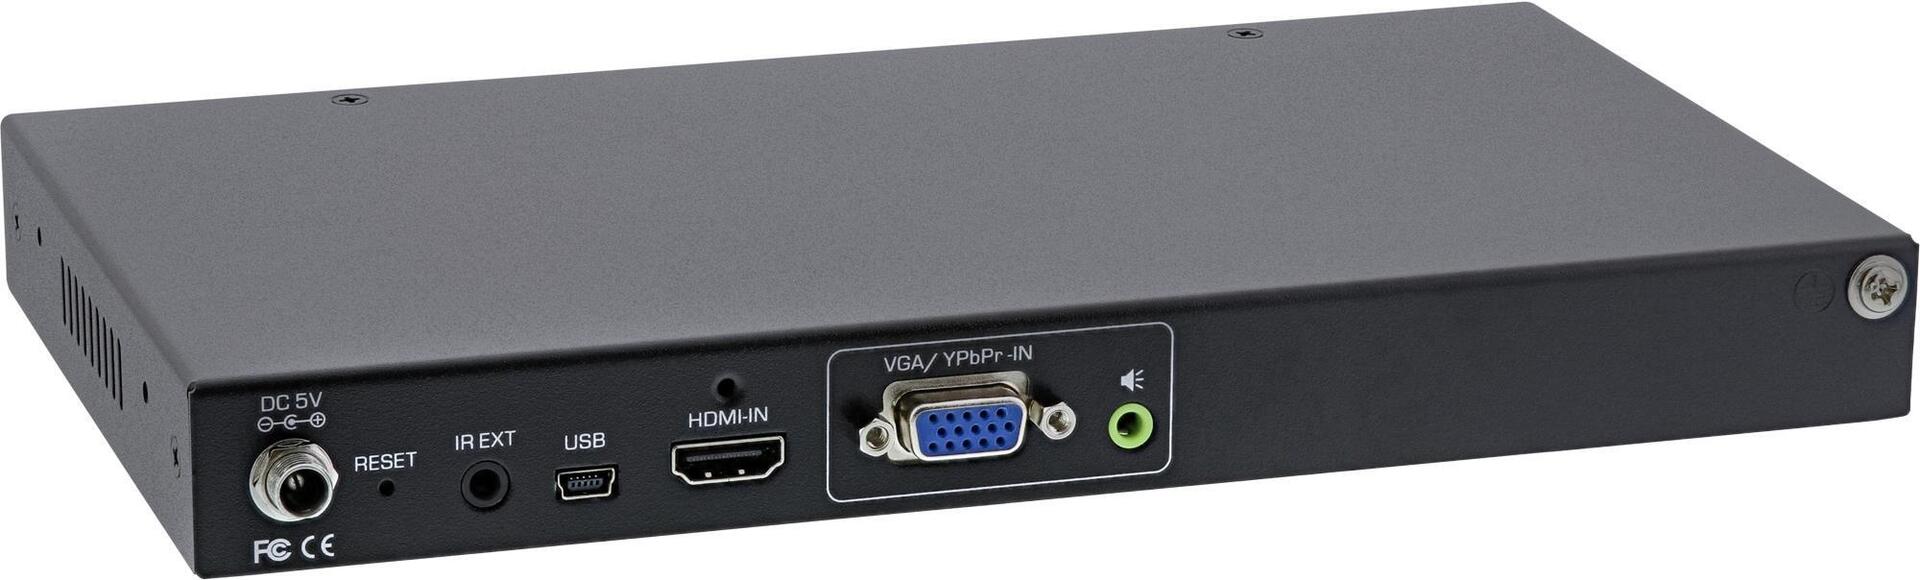 INLINE HDMI Videowand Verteiler 1 auf 9, Full-HD - Video/Audio-Schalter - 9 x HDMI - Desktop